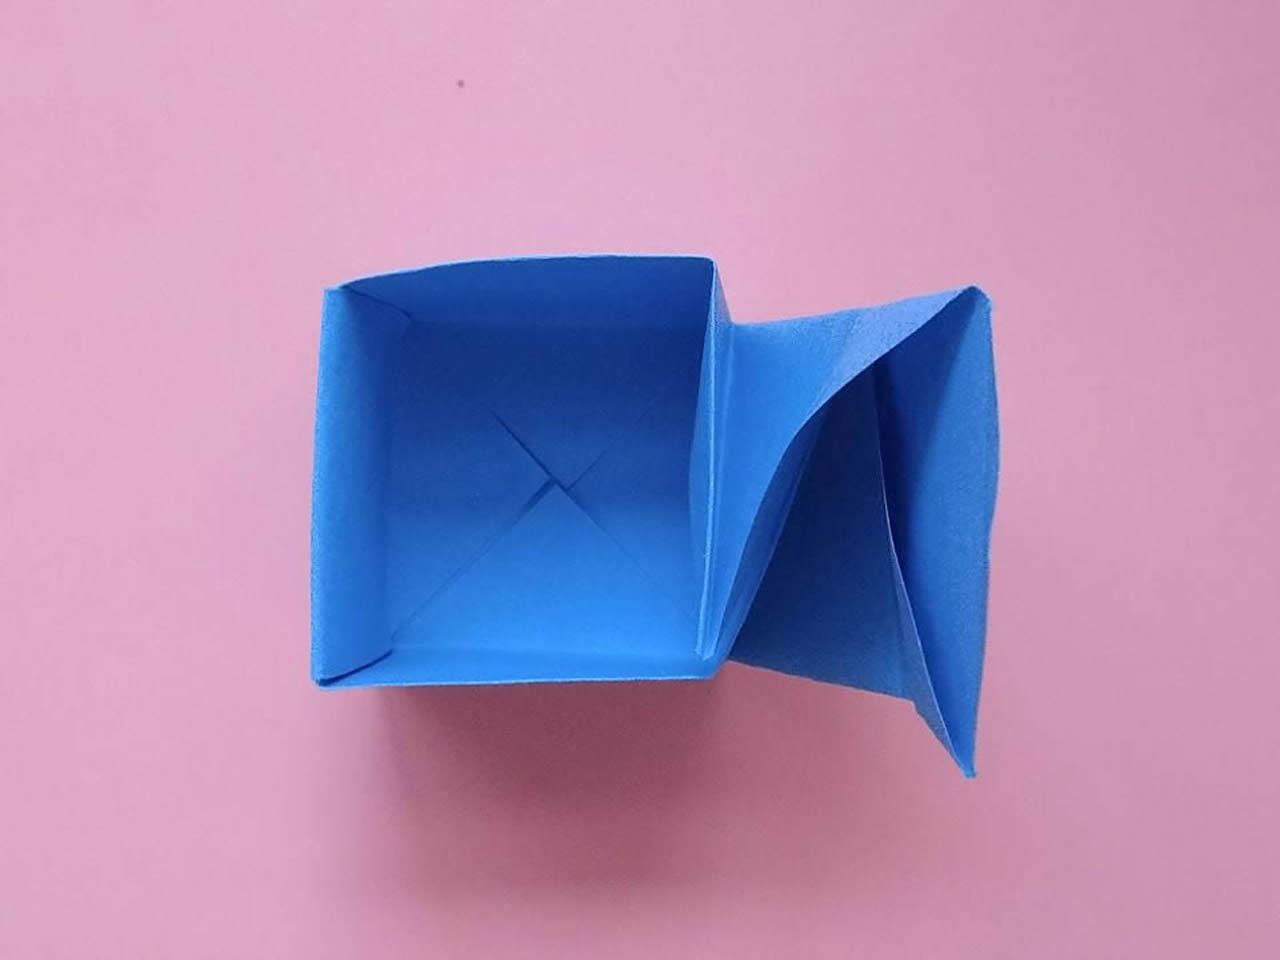 怎么用纸折一个戒指盒